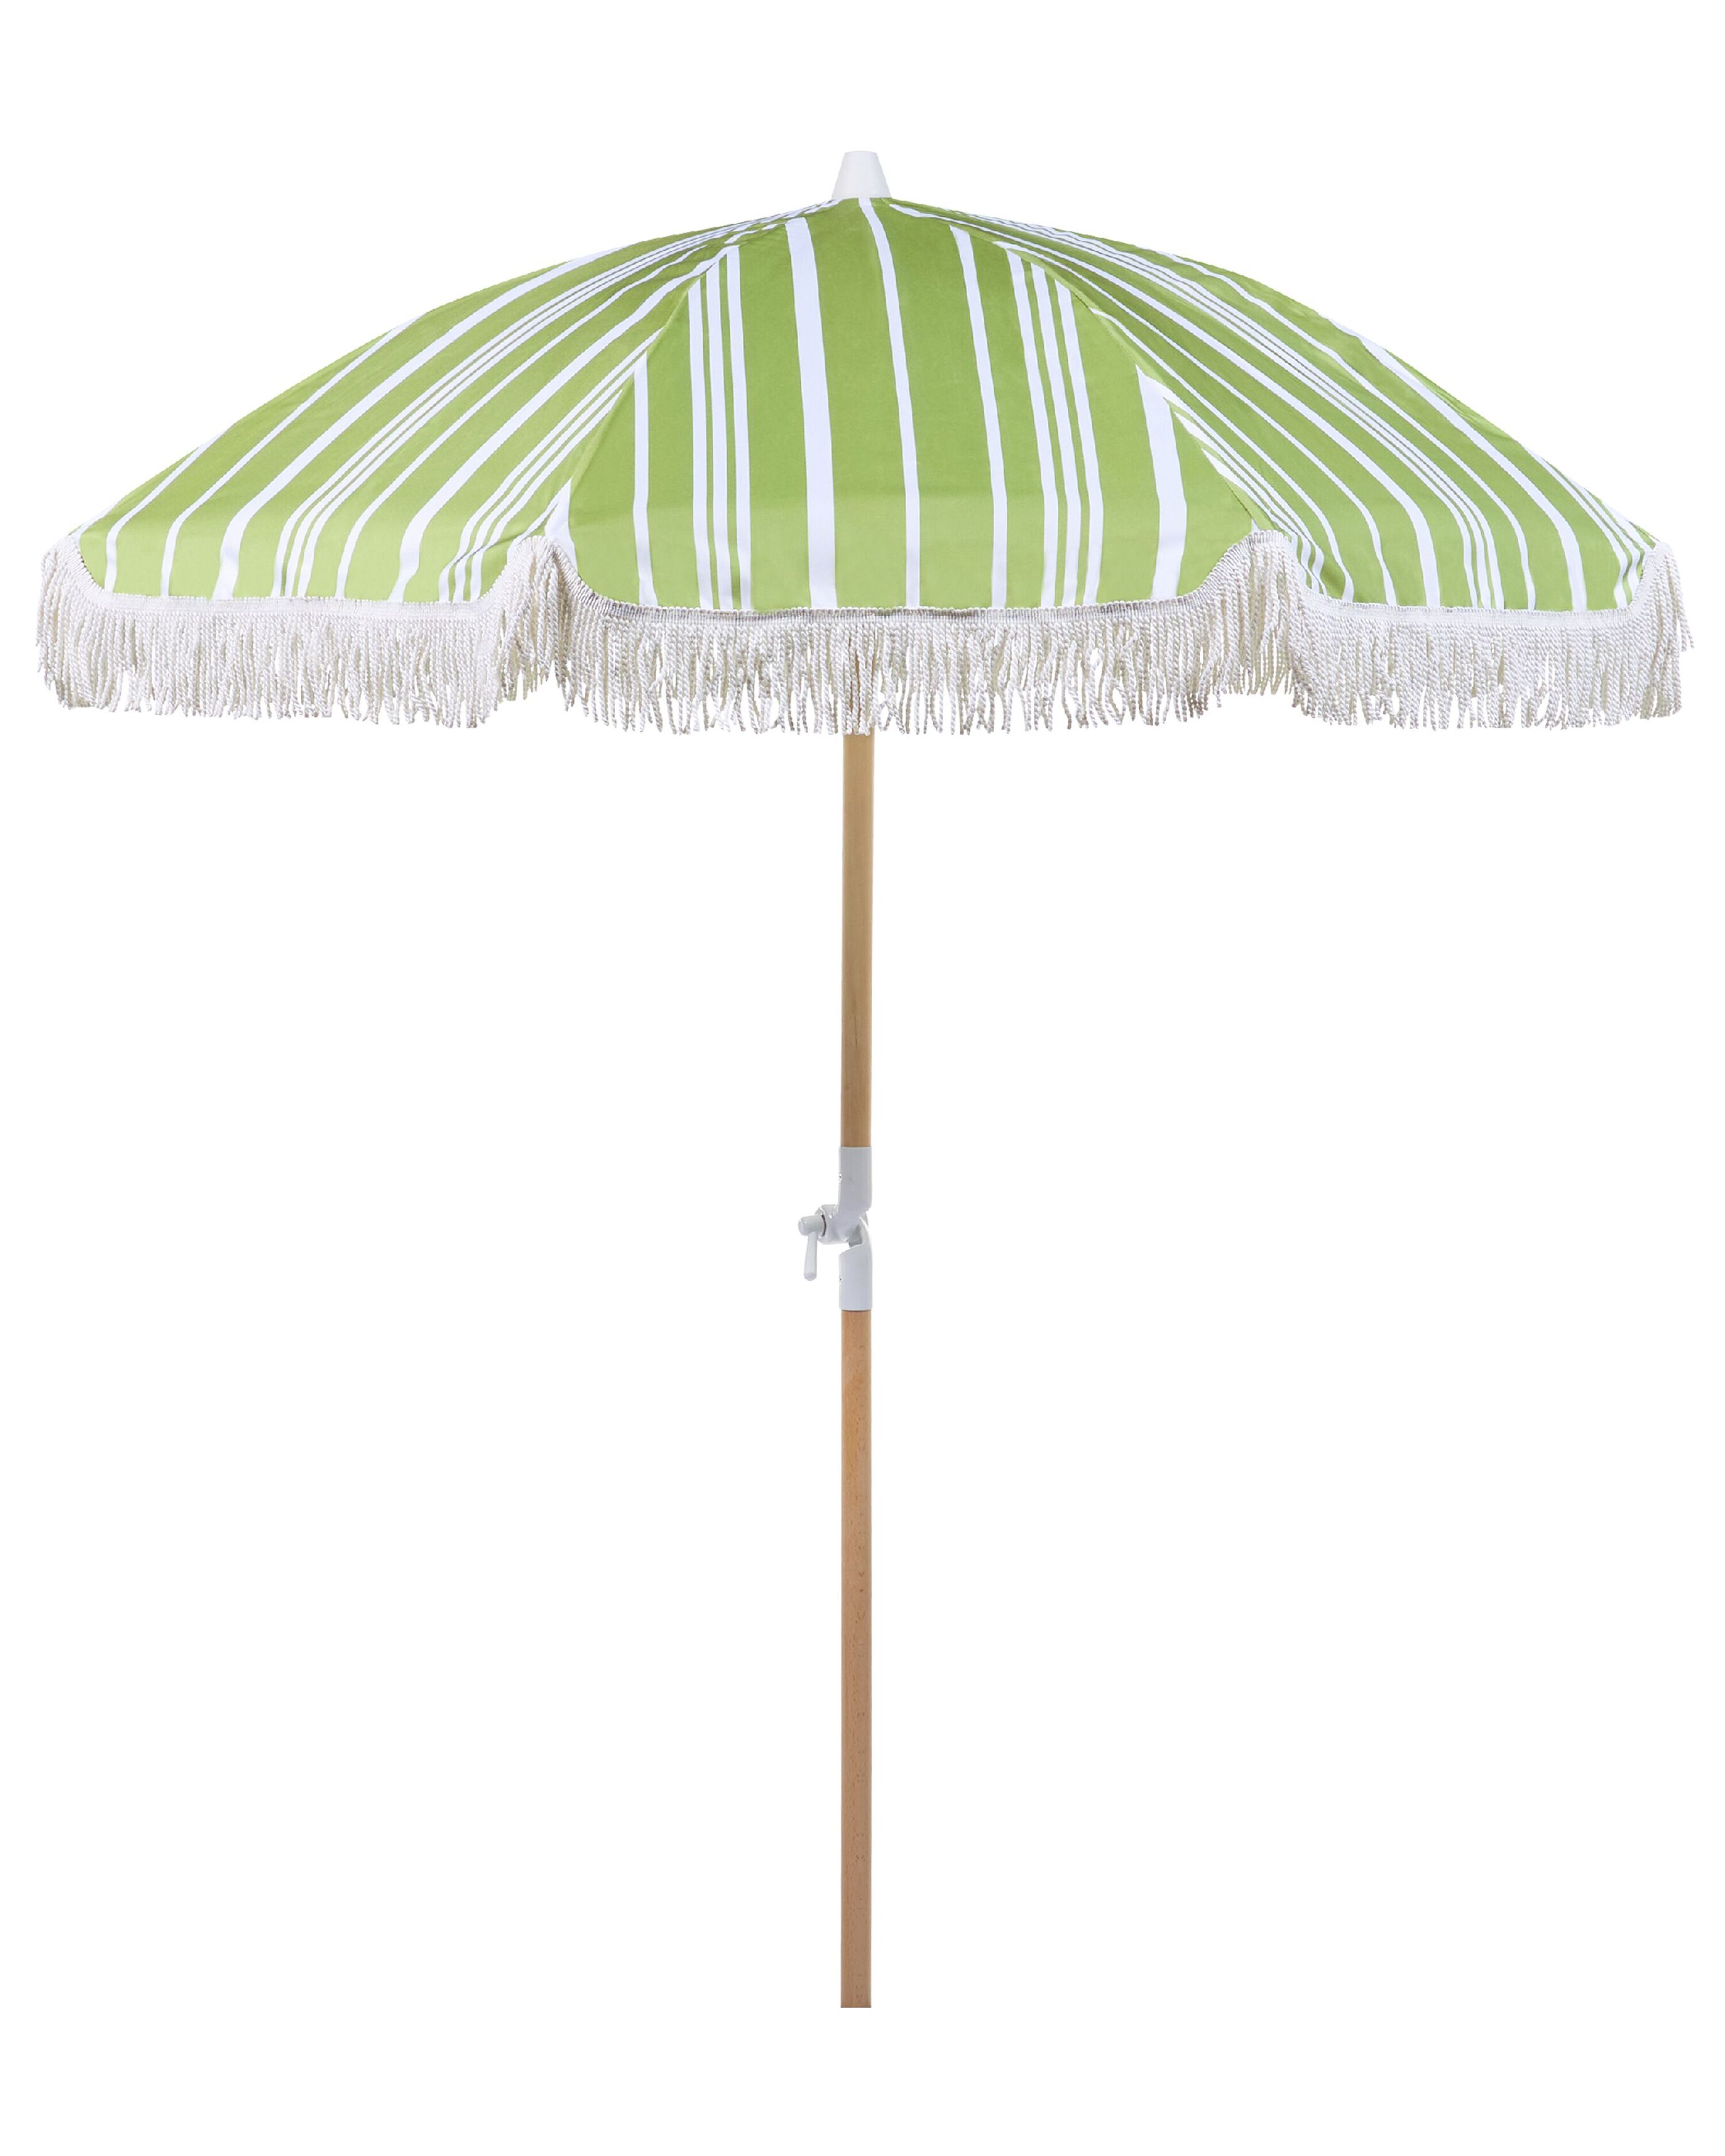 Kelder Voorkeur zuiverheid Parasol wit/groen ⌀ 150 cm MONDELLO | ✓ Gratis Levering